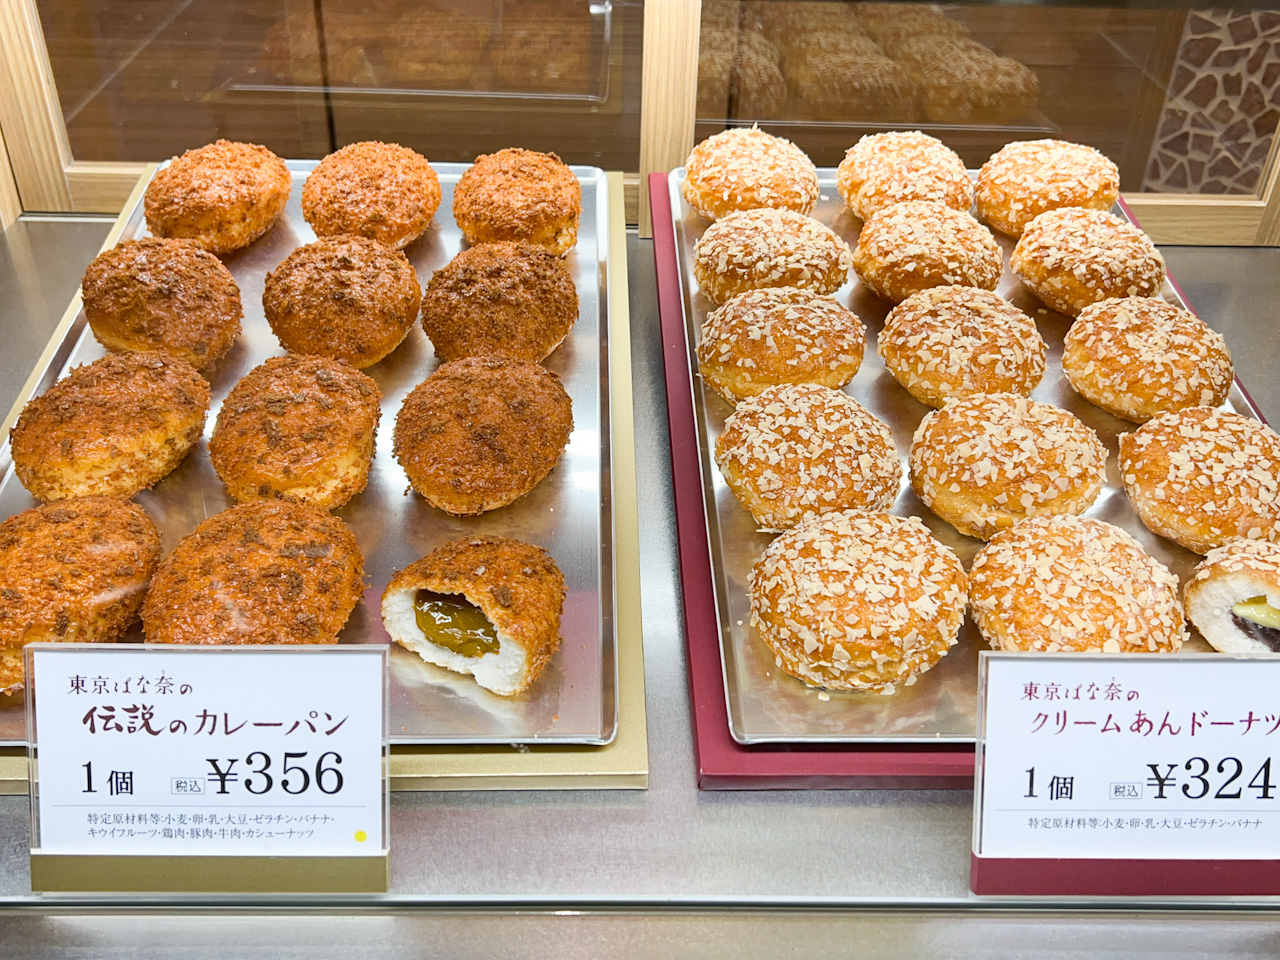 2002年に東京・丸の内１丁目にお店をオープンしてた頃、に1日2千食を売り上げた伝説のカレーパンを、今回20年の時を経て復活